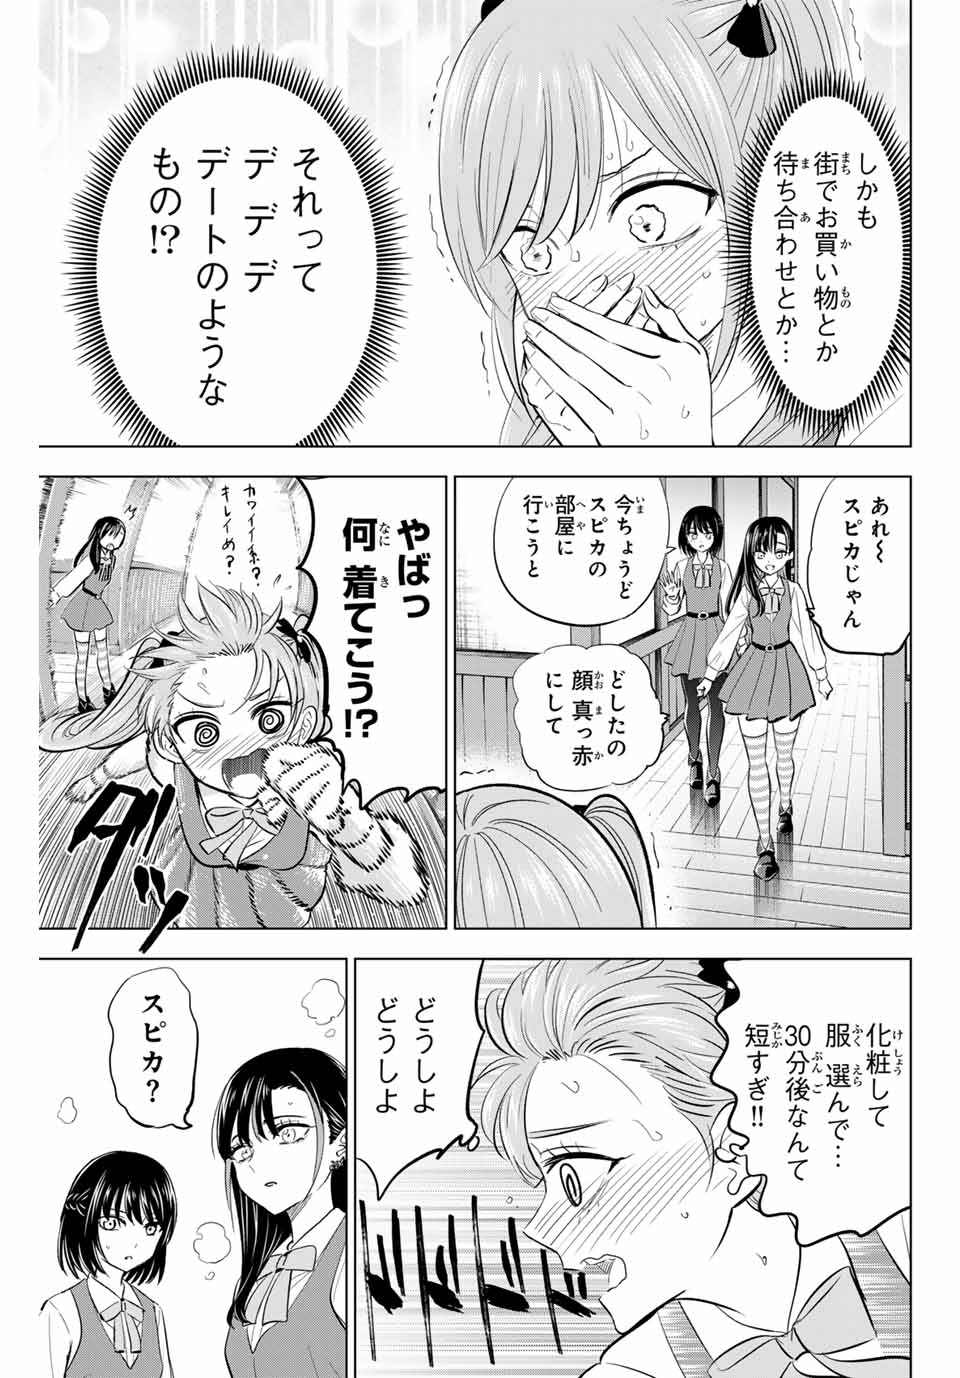 Kuroneko to Majo no Kyoushitsu - Chapter 59 - Page 7